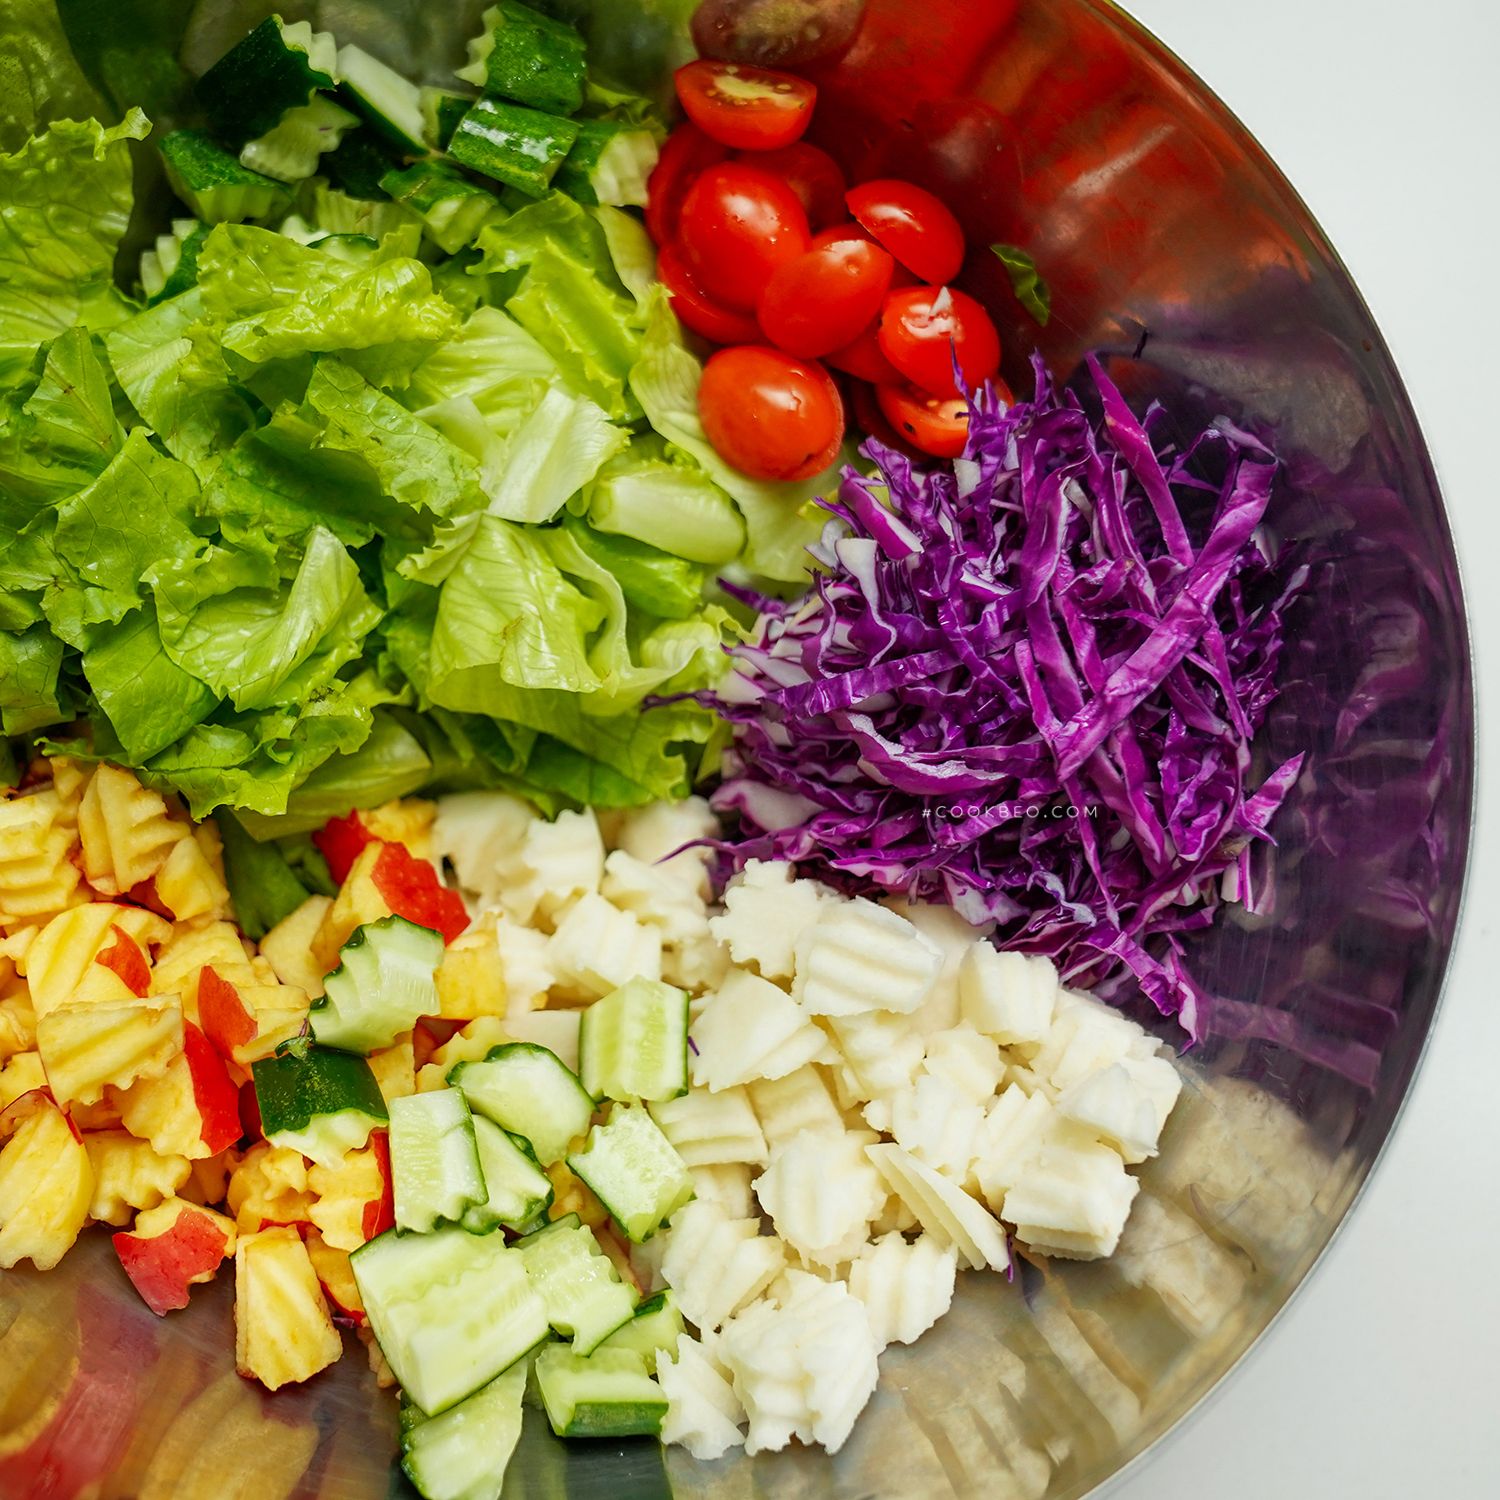 Cách cắt và chuẩn bị nguyên liệu cho món salad trộn rau củ quả như thế nào để đảm bảo thẩm mỹ và an toàn thực phẩm?